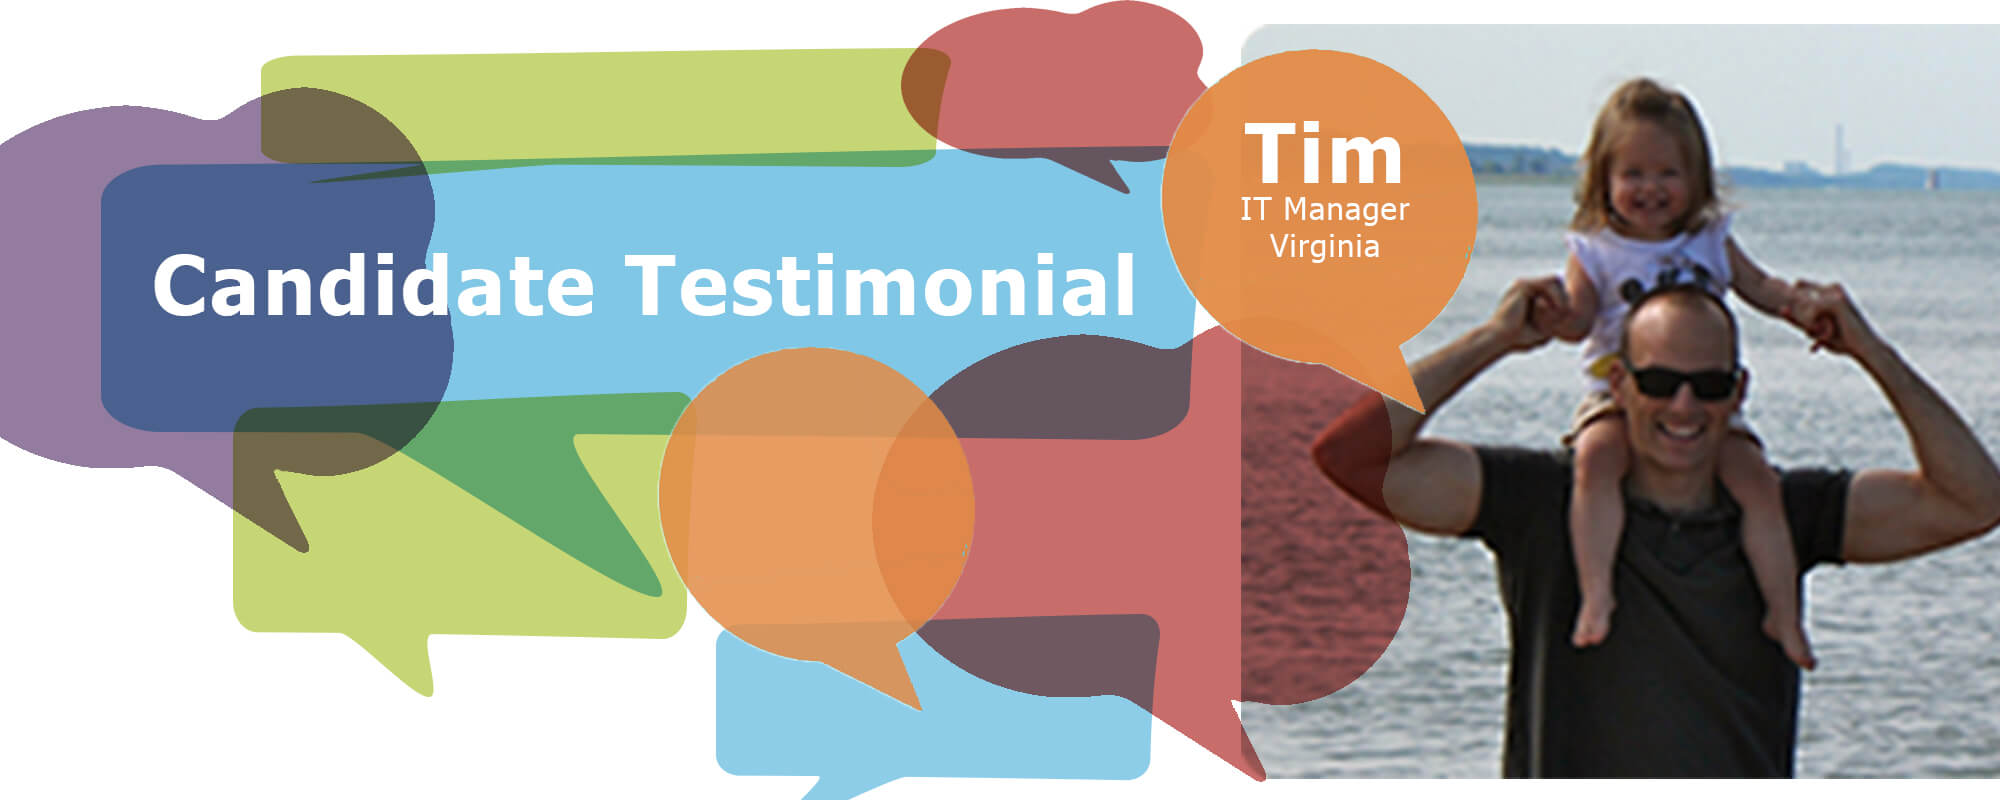 Candidate Testimonial: Tim M